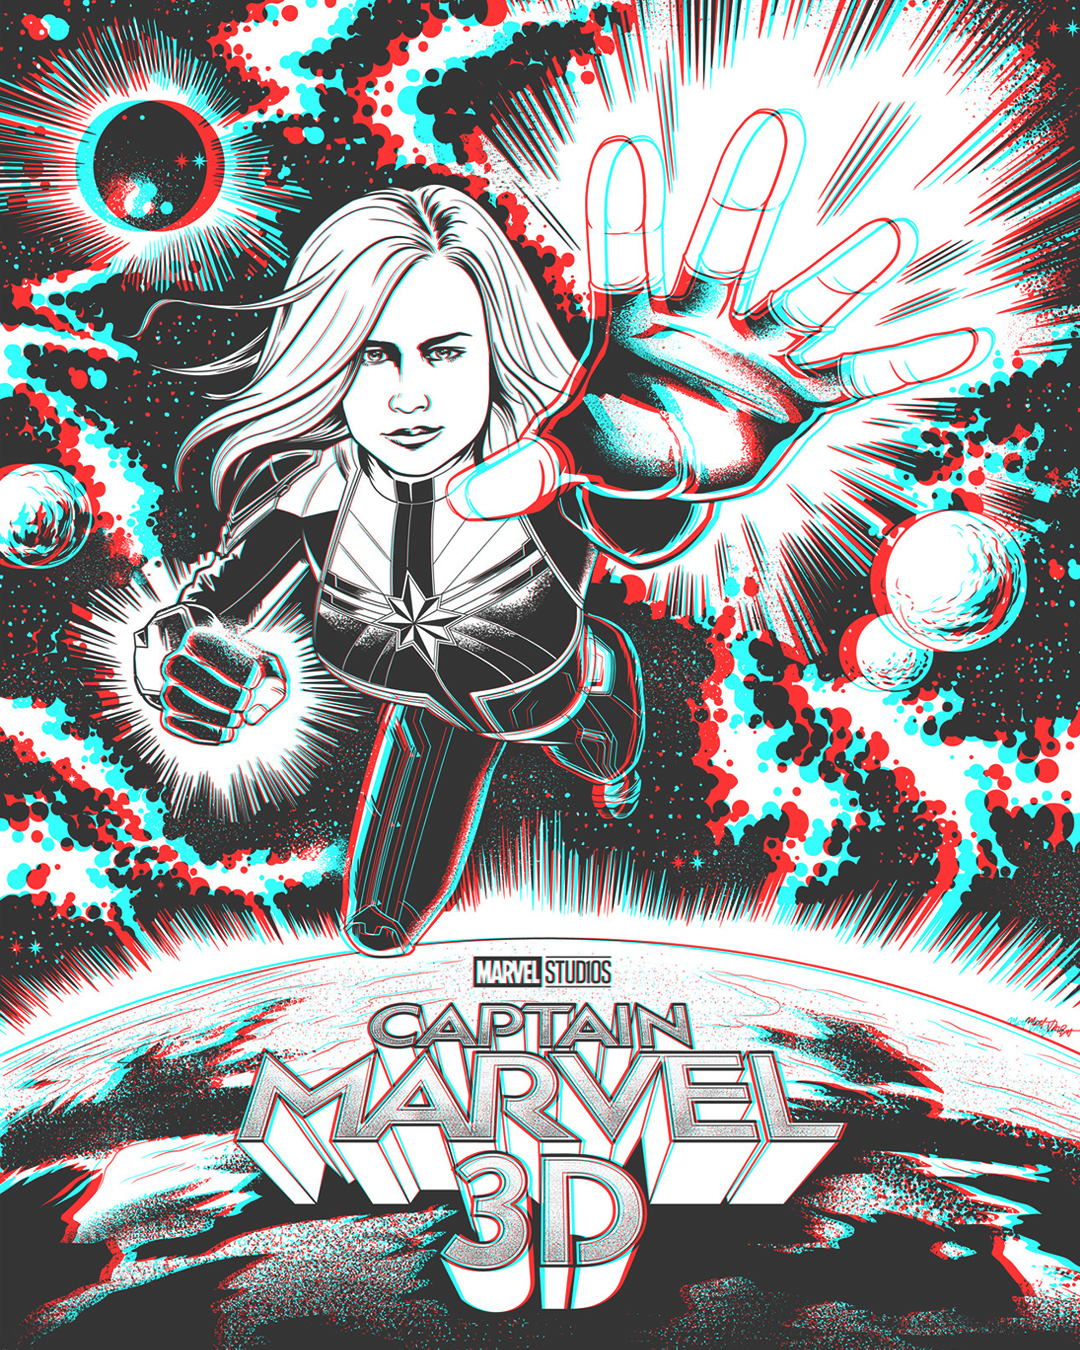 Captain Marvel 3D poster by Matt Talbot